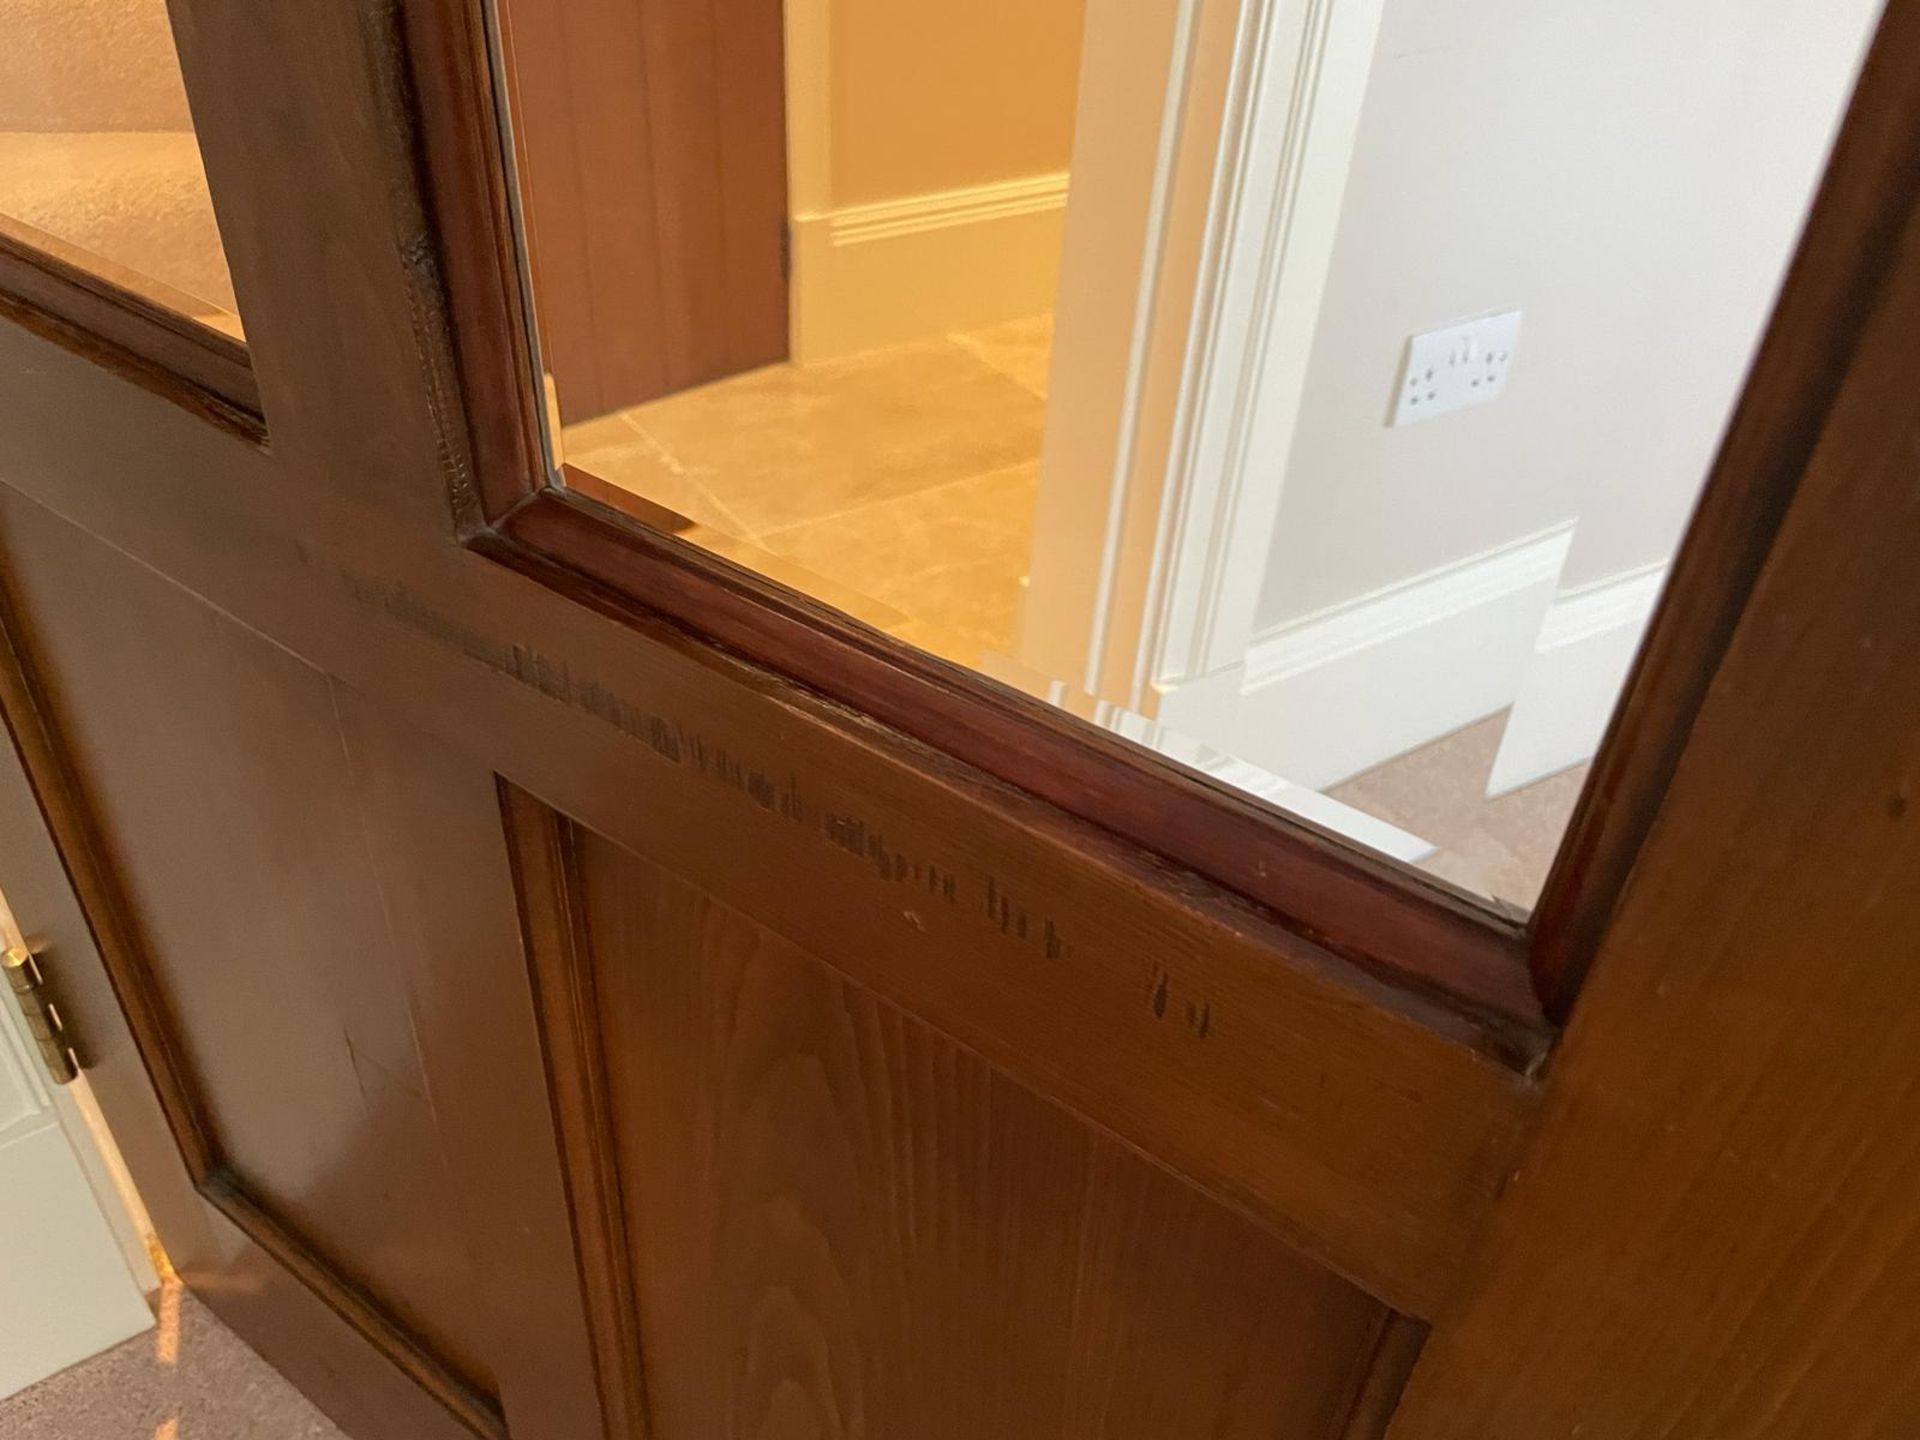 1 x Solid Wood Lockable Internal Door - Includes Handles and Hinges - Ref: PAN130 - NO VAT - Image 8 of 8